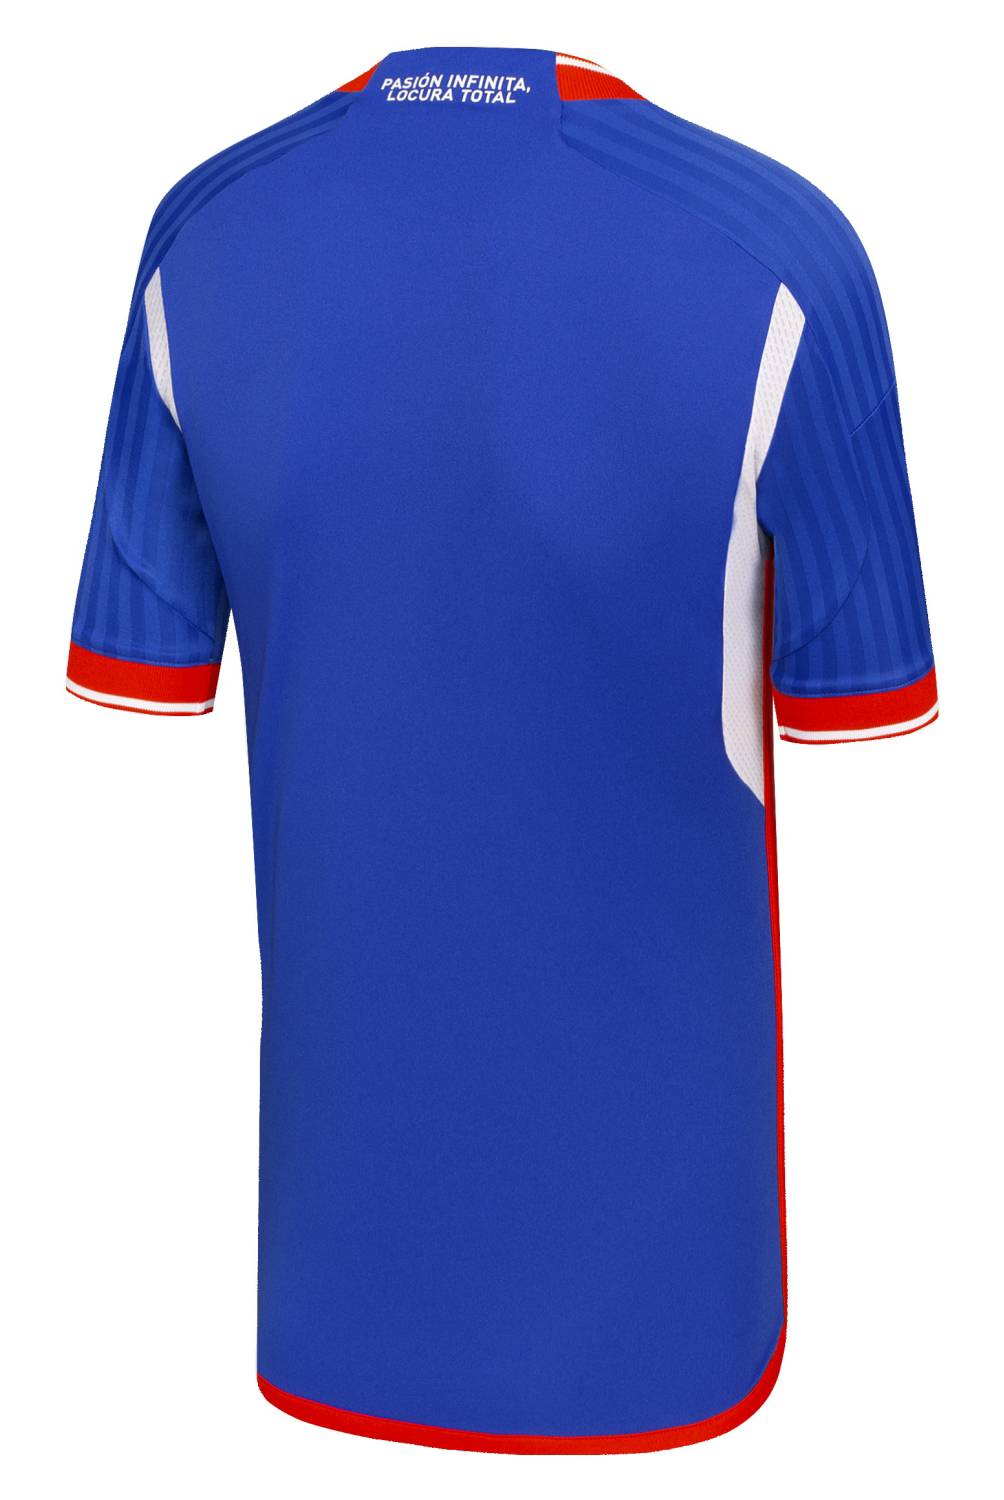 ADIDAS - Camiseta De Fútbol Universidad De Chile Local Niño Adidas